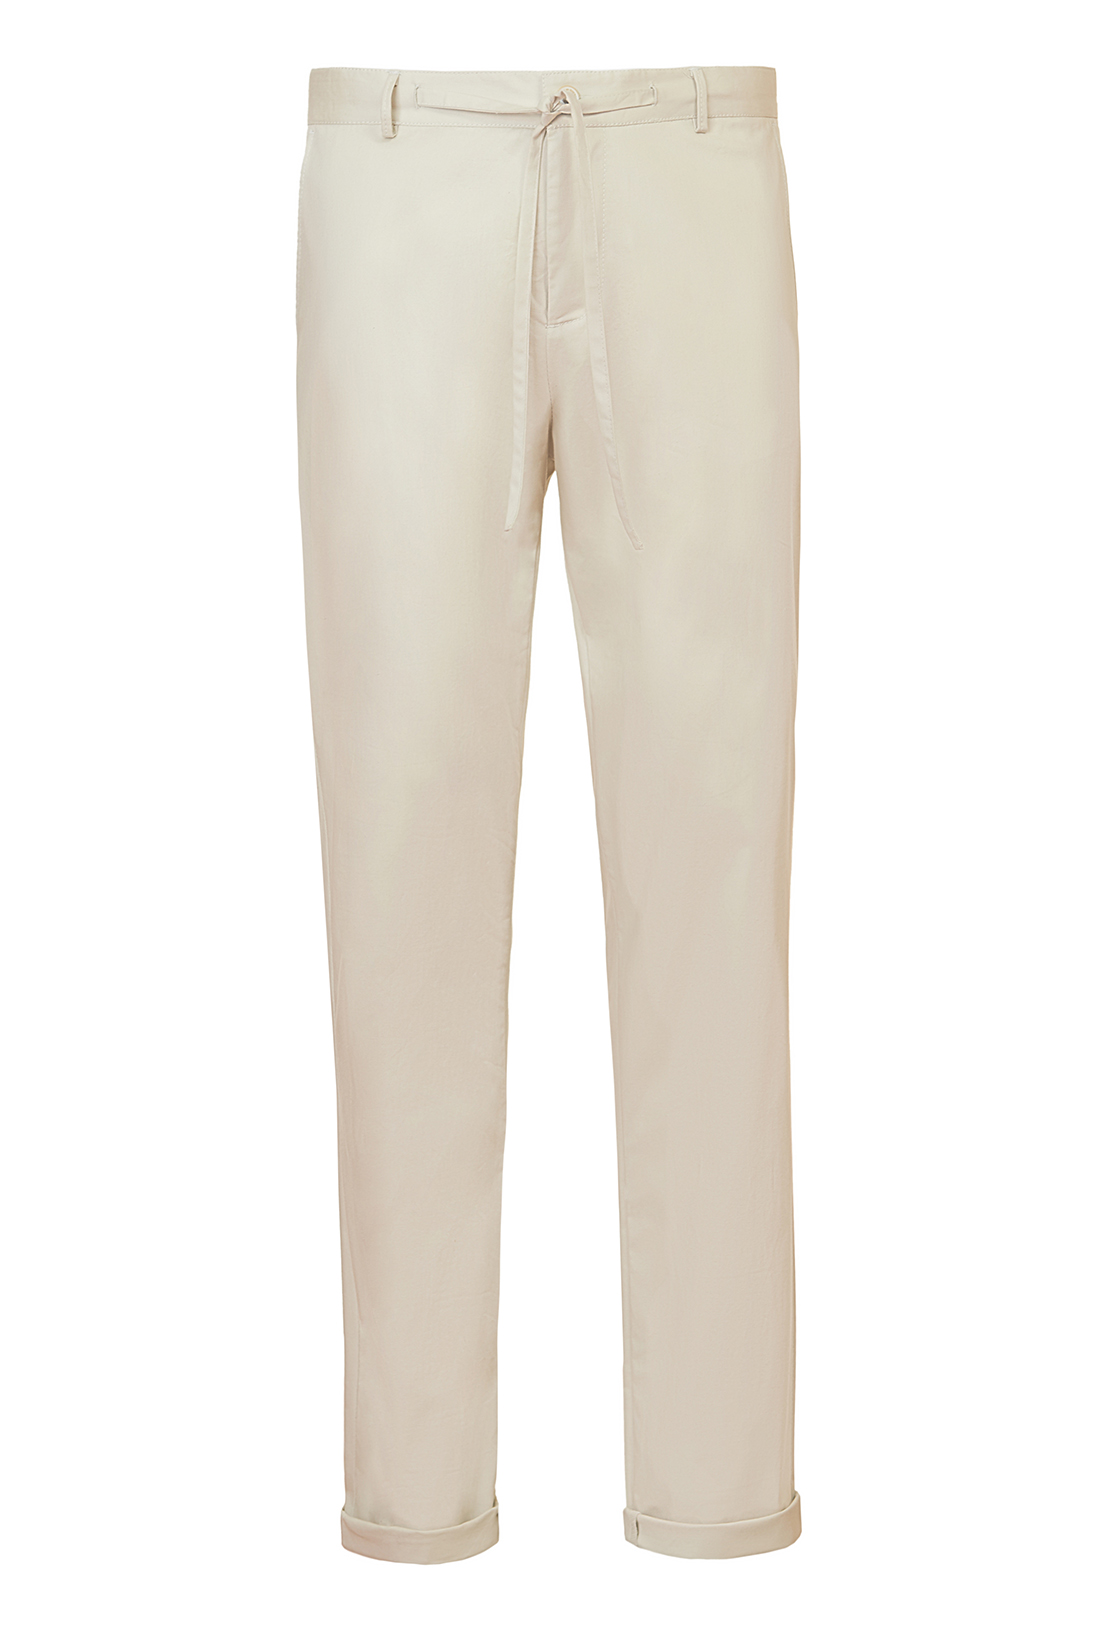 Летние брюки с кулиской (арт. baon B797023), размер L, цвет бежевый Летние брюки с кулиской (арт. baon B797023) - фото 3